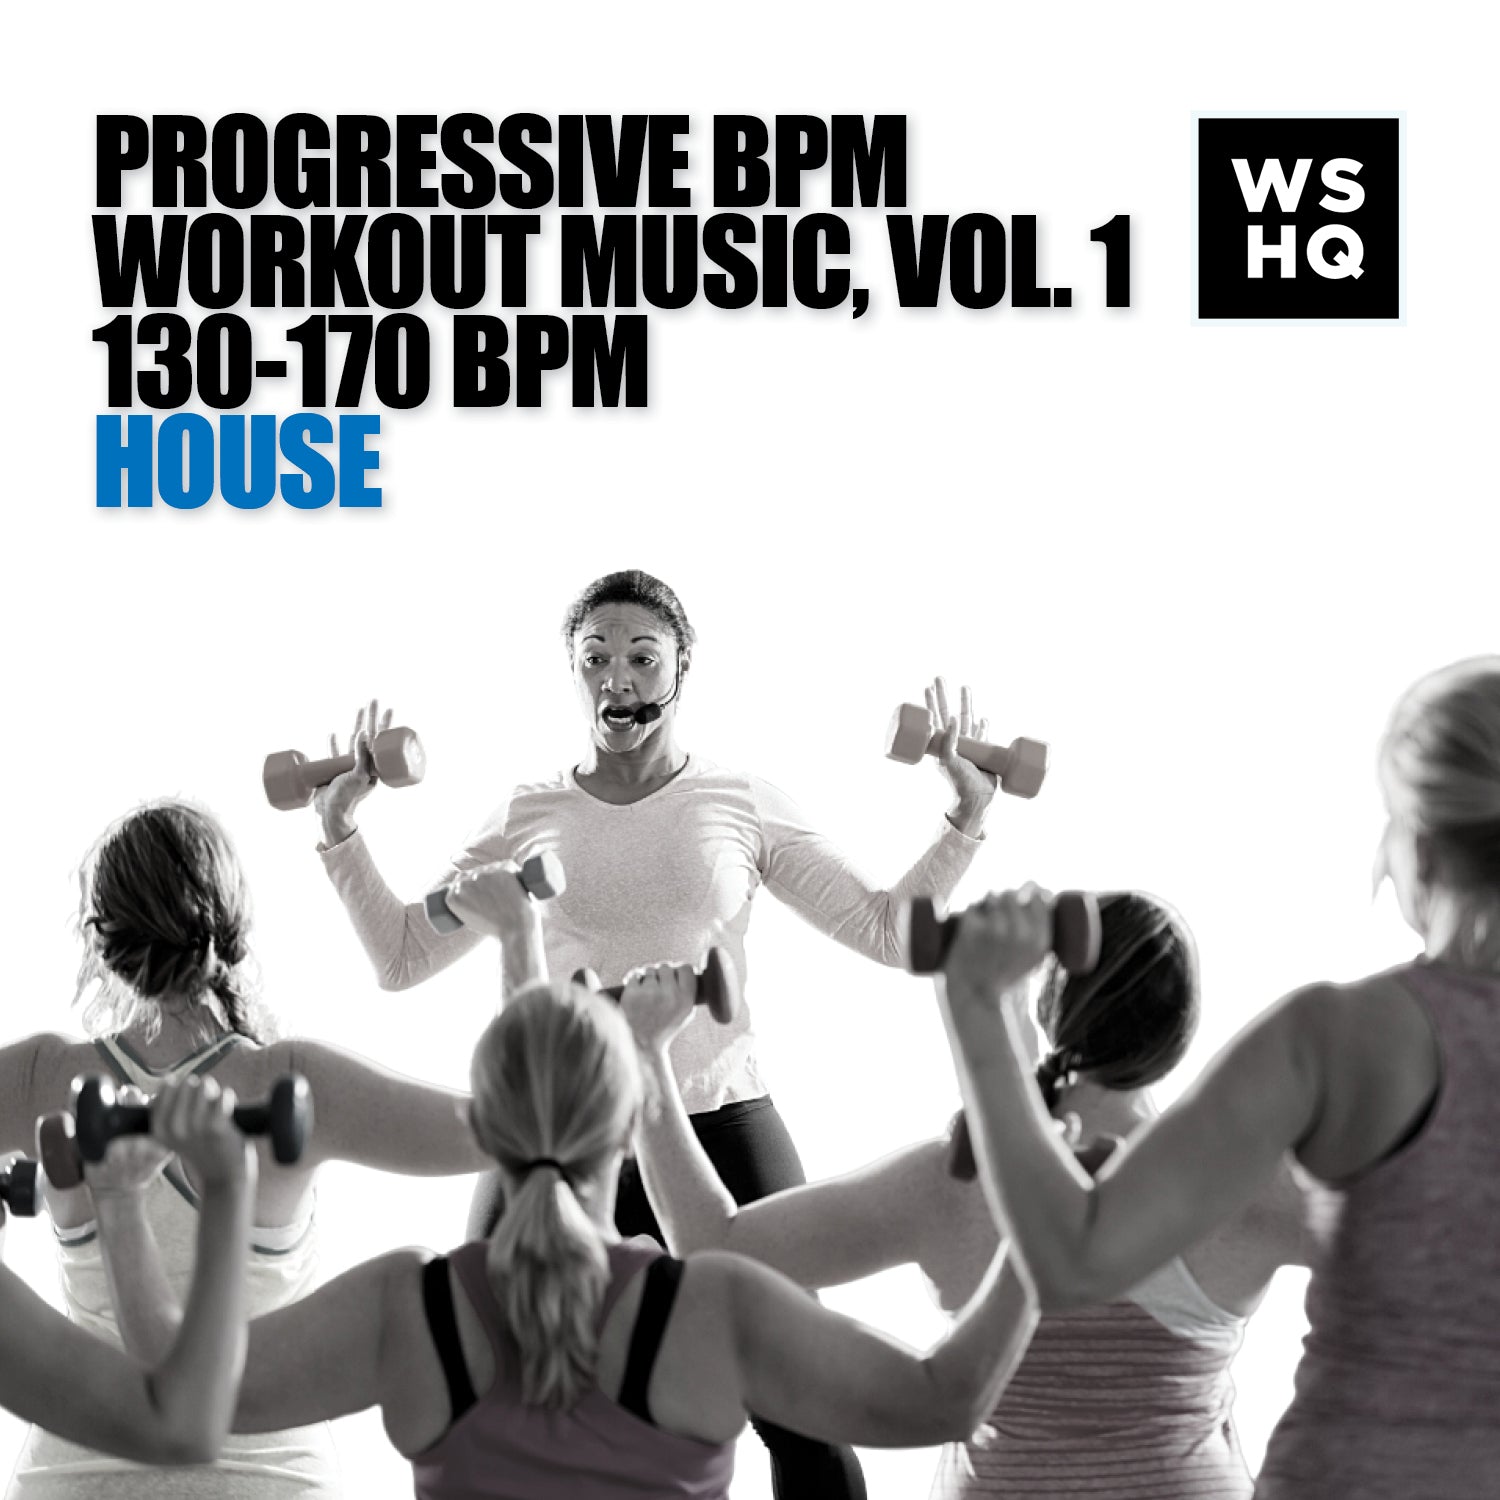 Progressive BPM Workout Music, Vol. 1 - 130-170 BPM